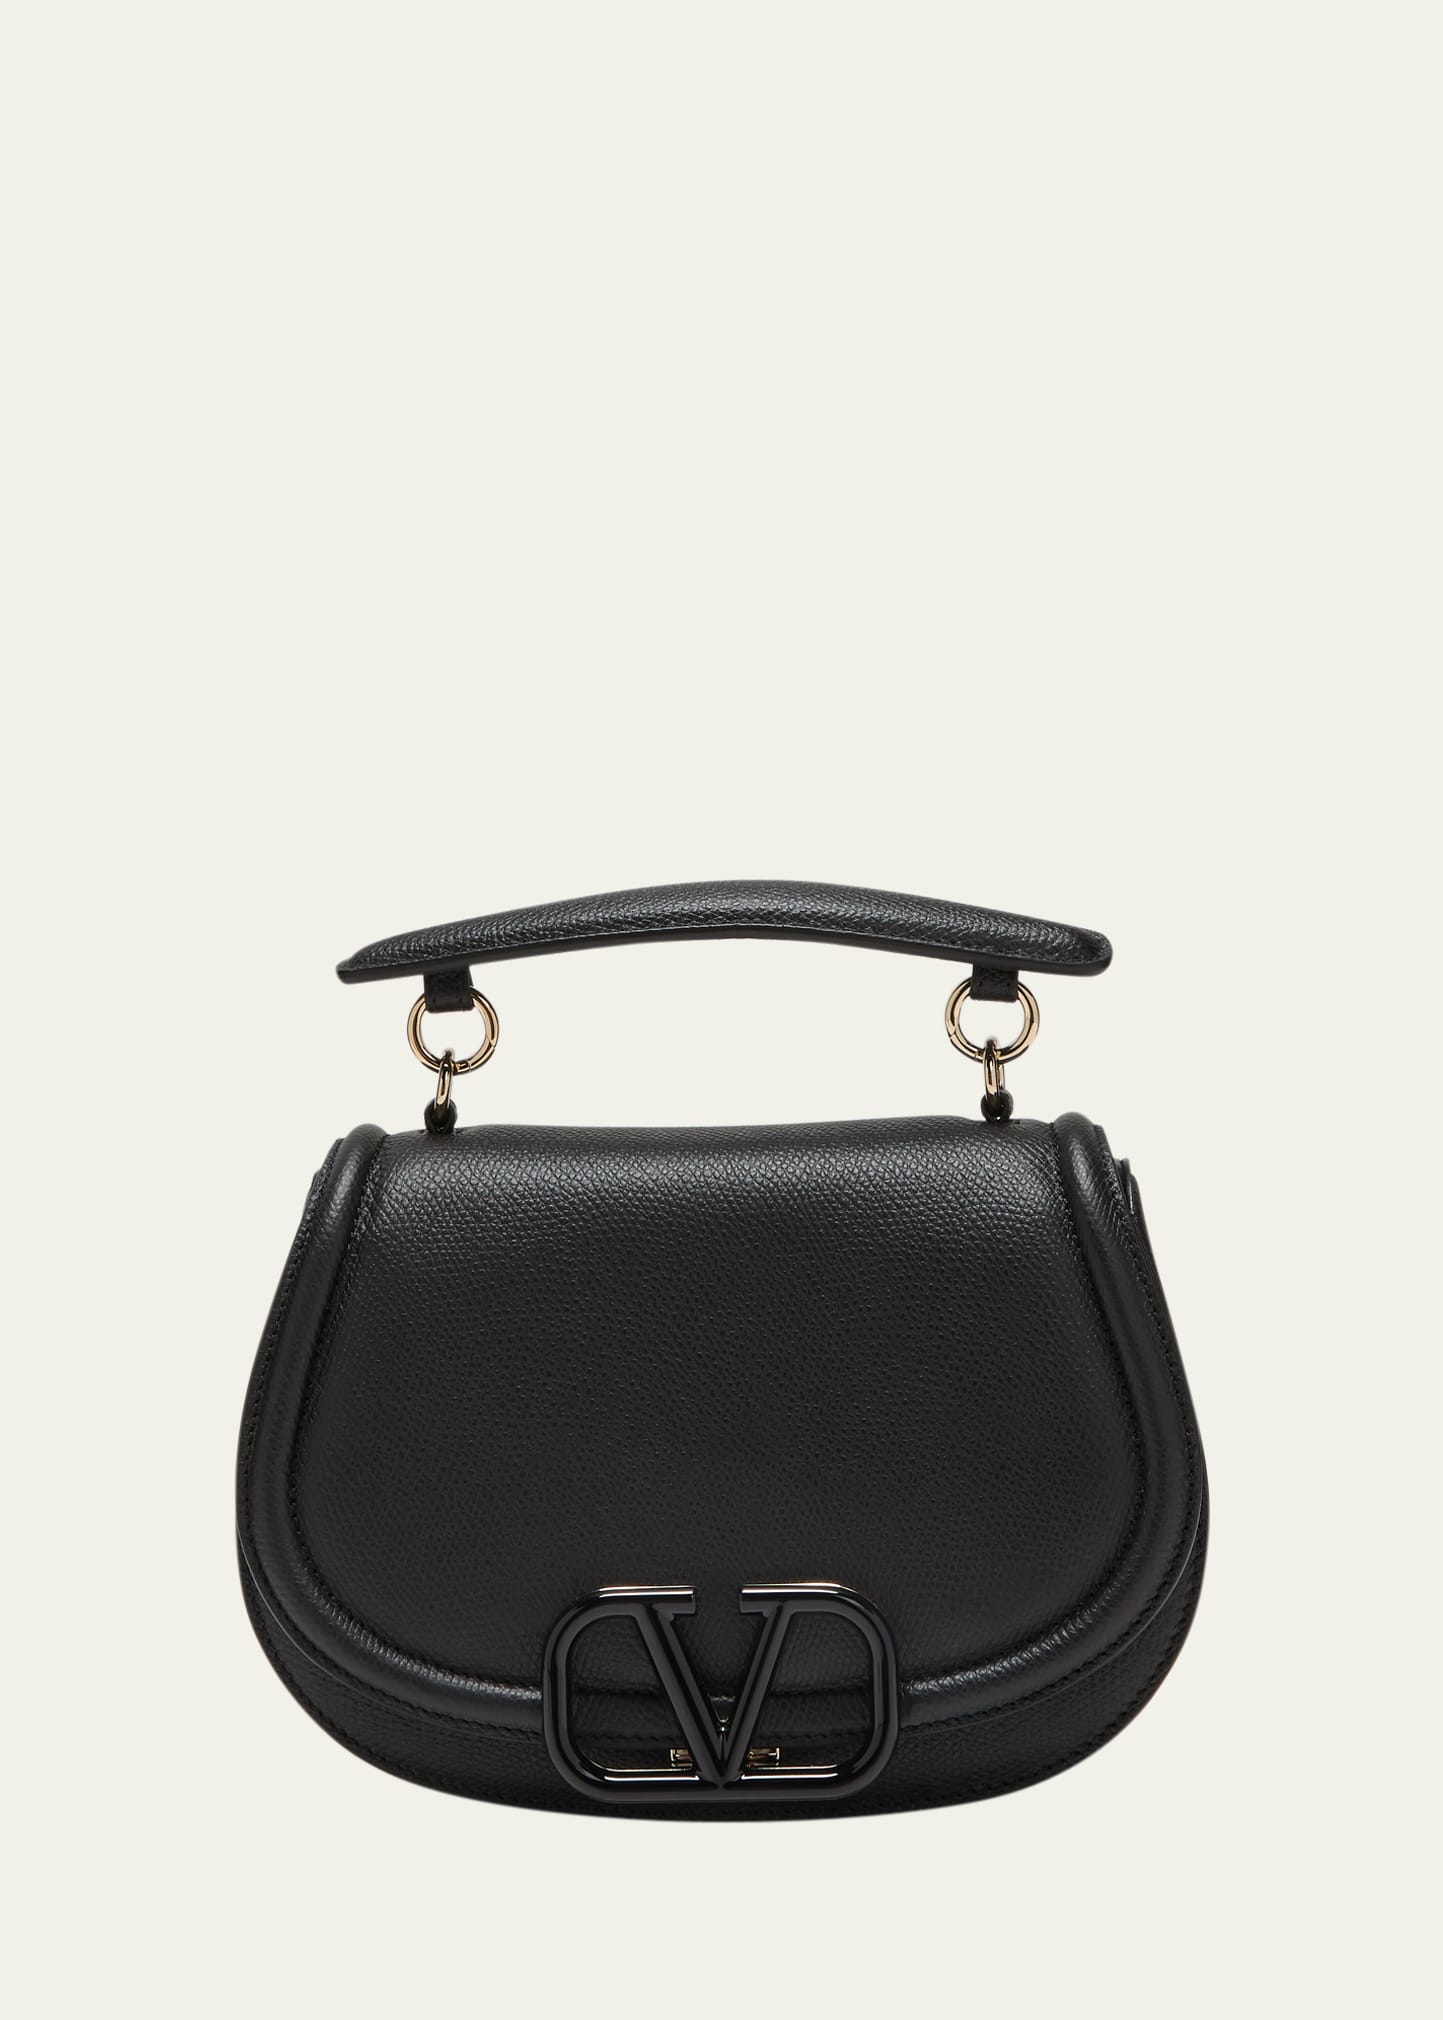 Valentino Garavani VSLING shoulder bag - ShopStyle